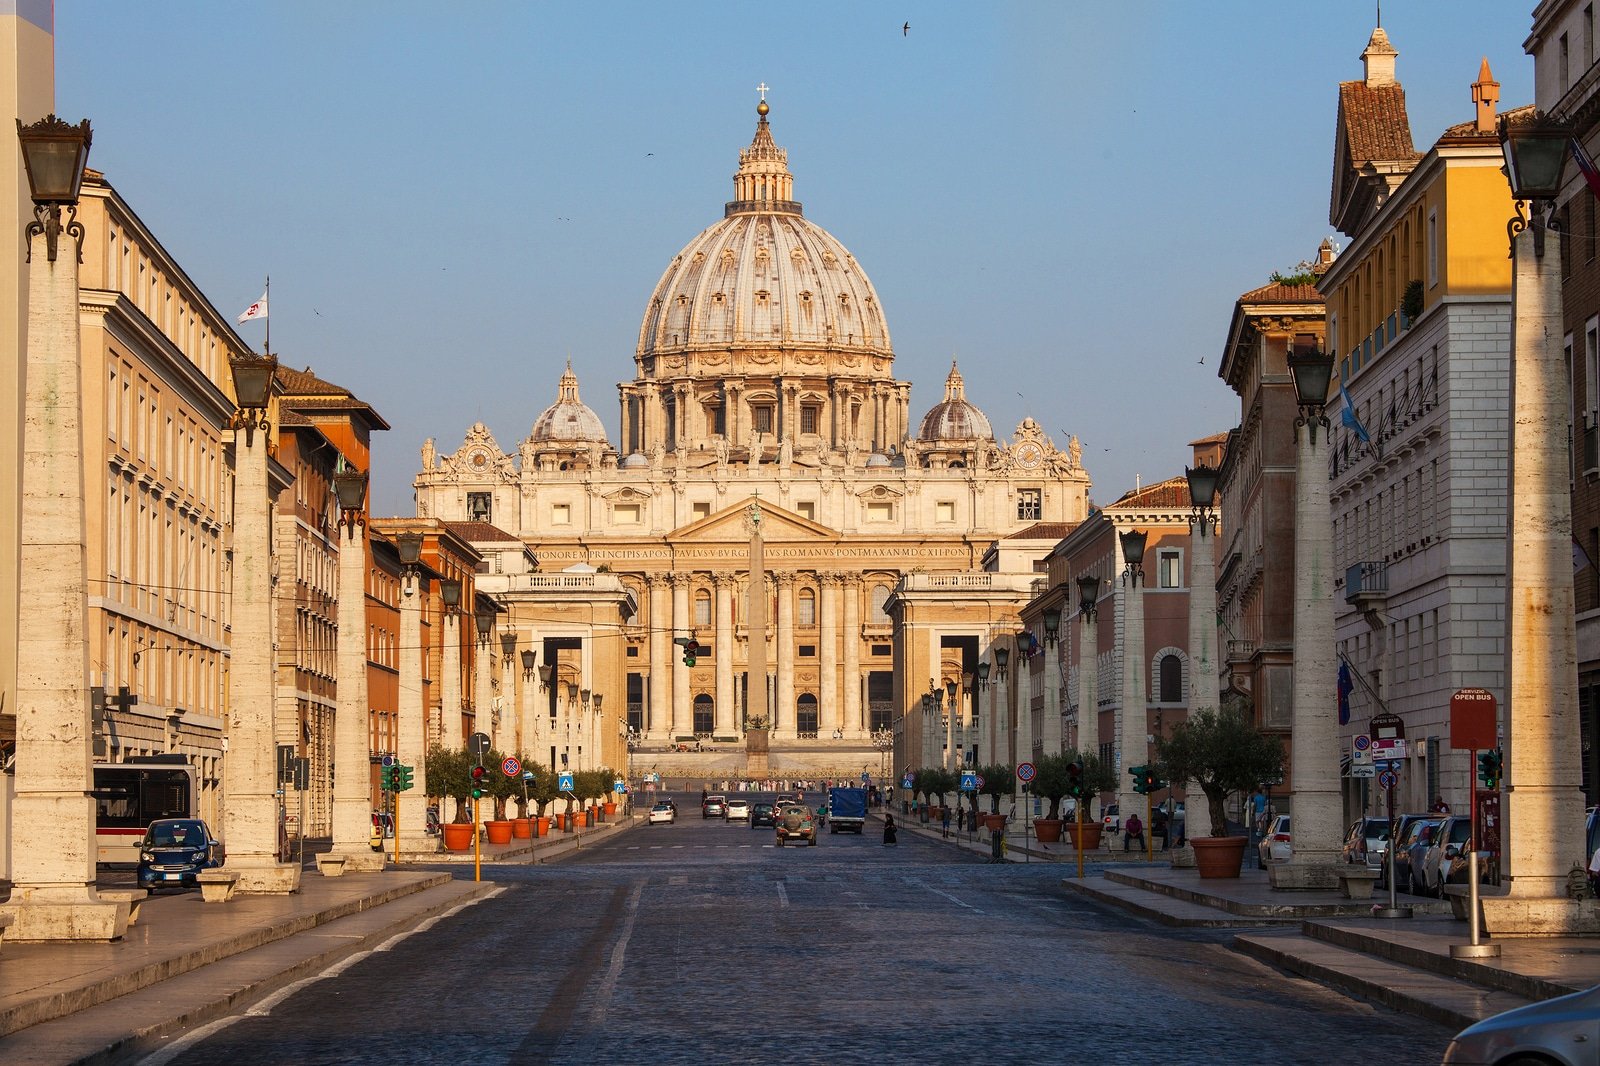 Vista da Basílica de São Pedro, no Vaticano, em Roma (Itália).